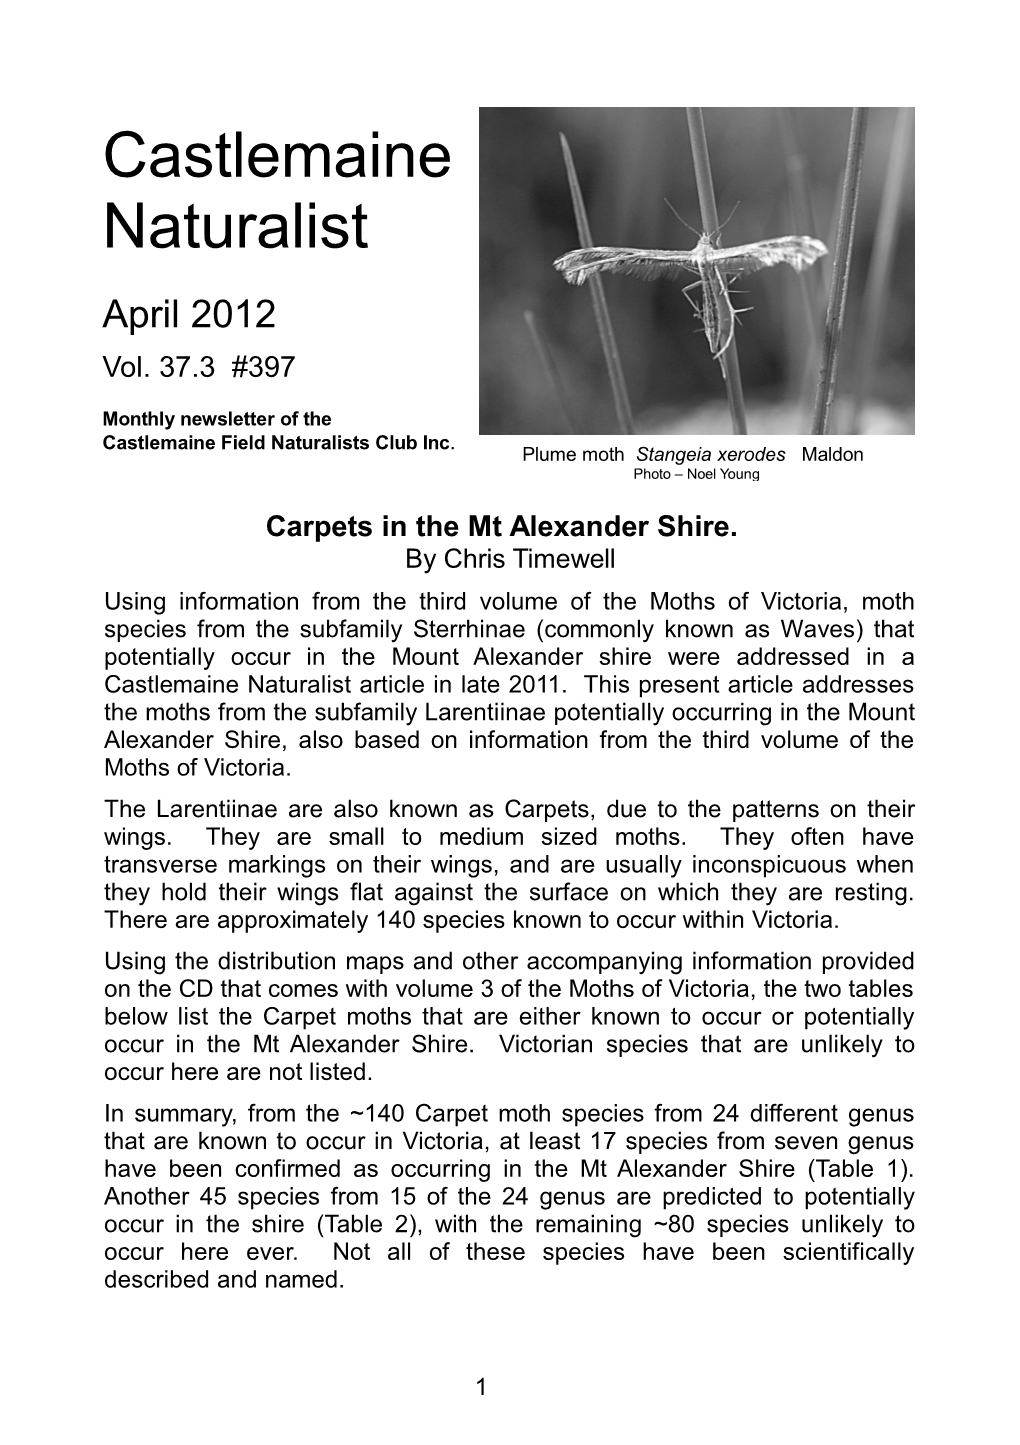 Castlemaine Naturalist April 2012 Vol